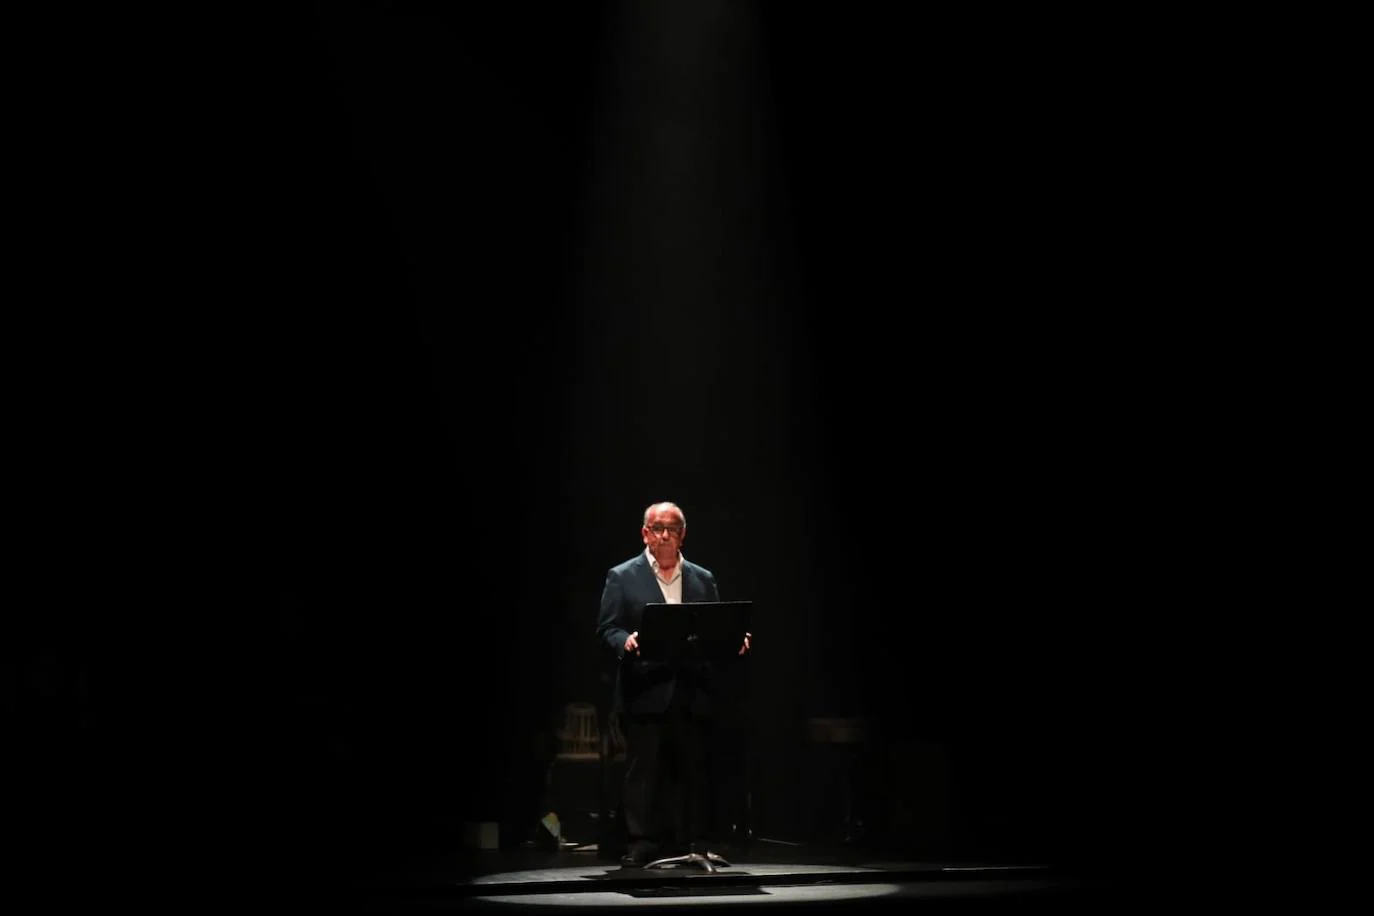 Fotos: Homenaje a Manolo Sanlúcar en el Teatro Villamarta